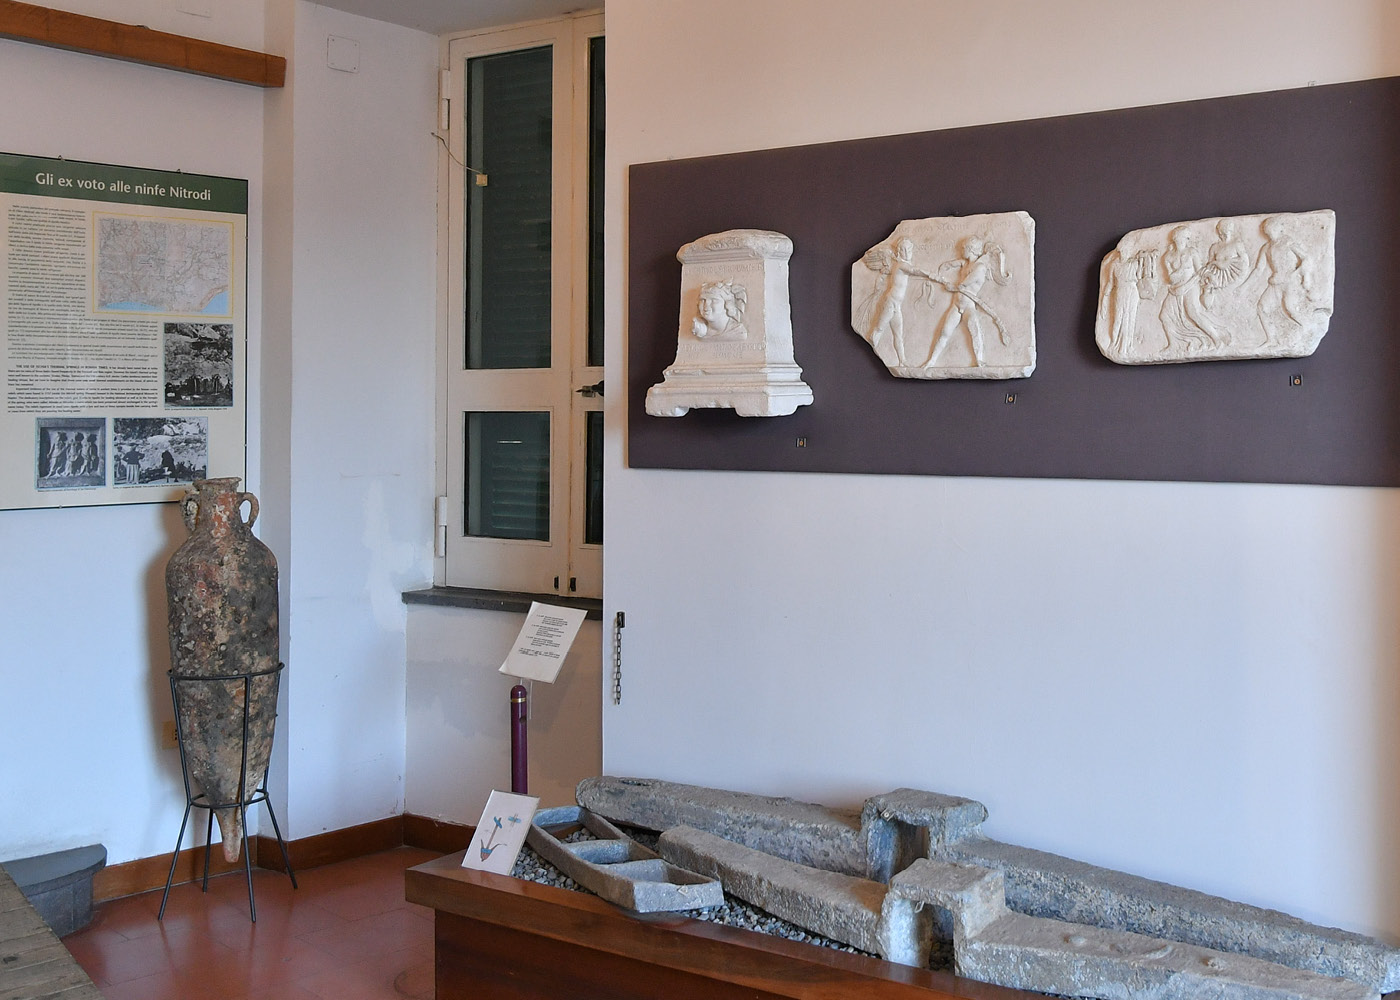 storia-museo-di-pithecusae-g5